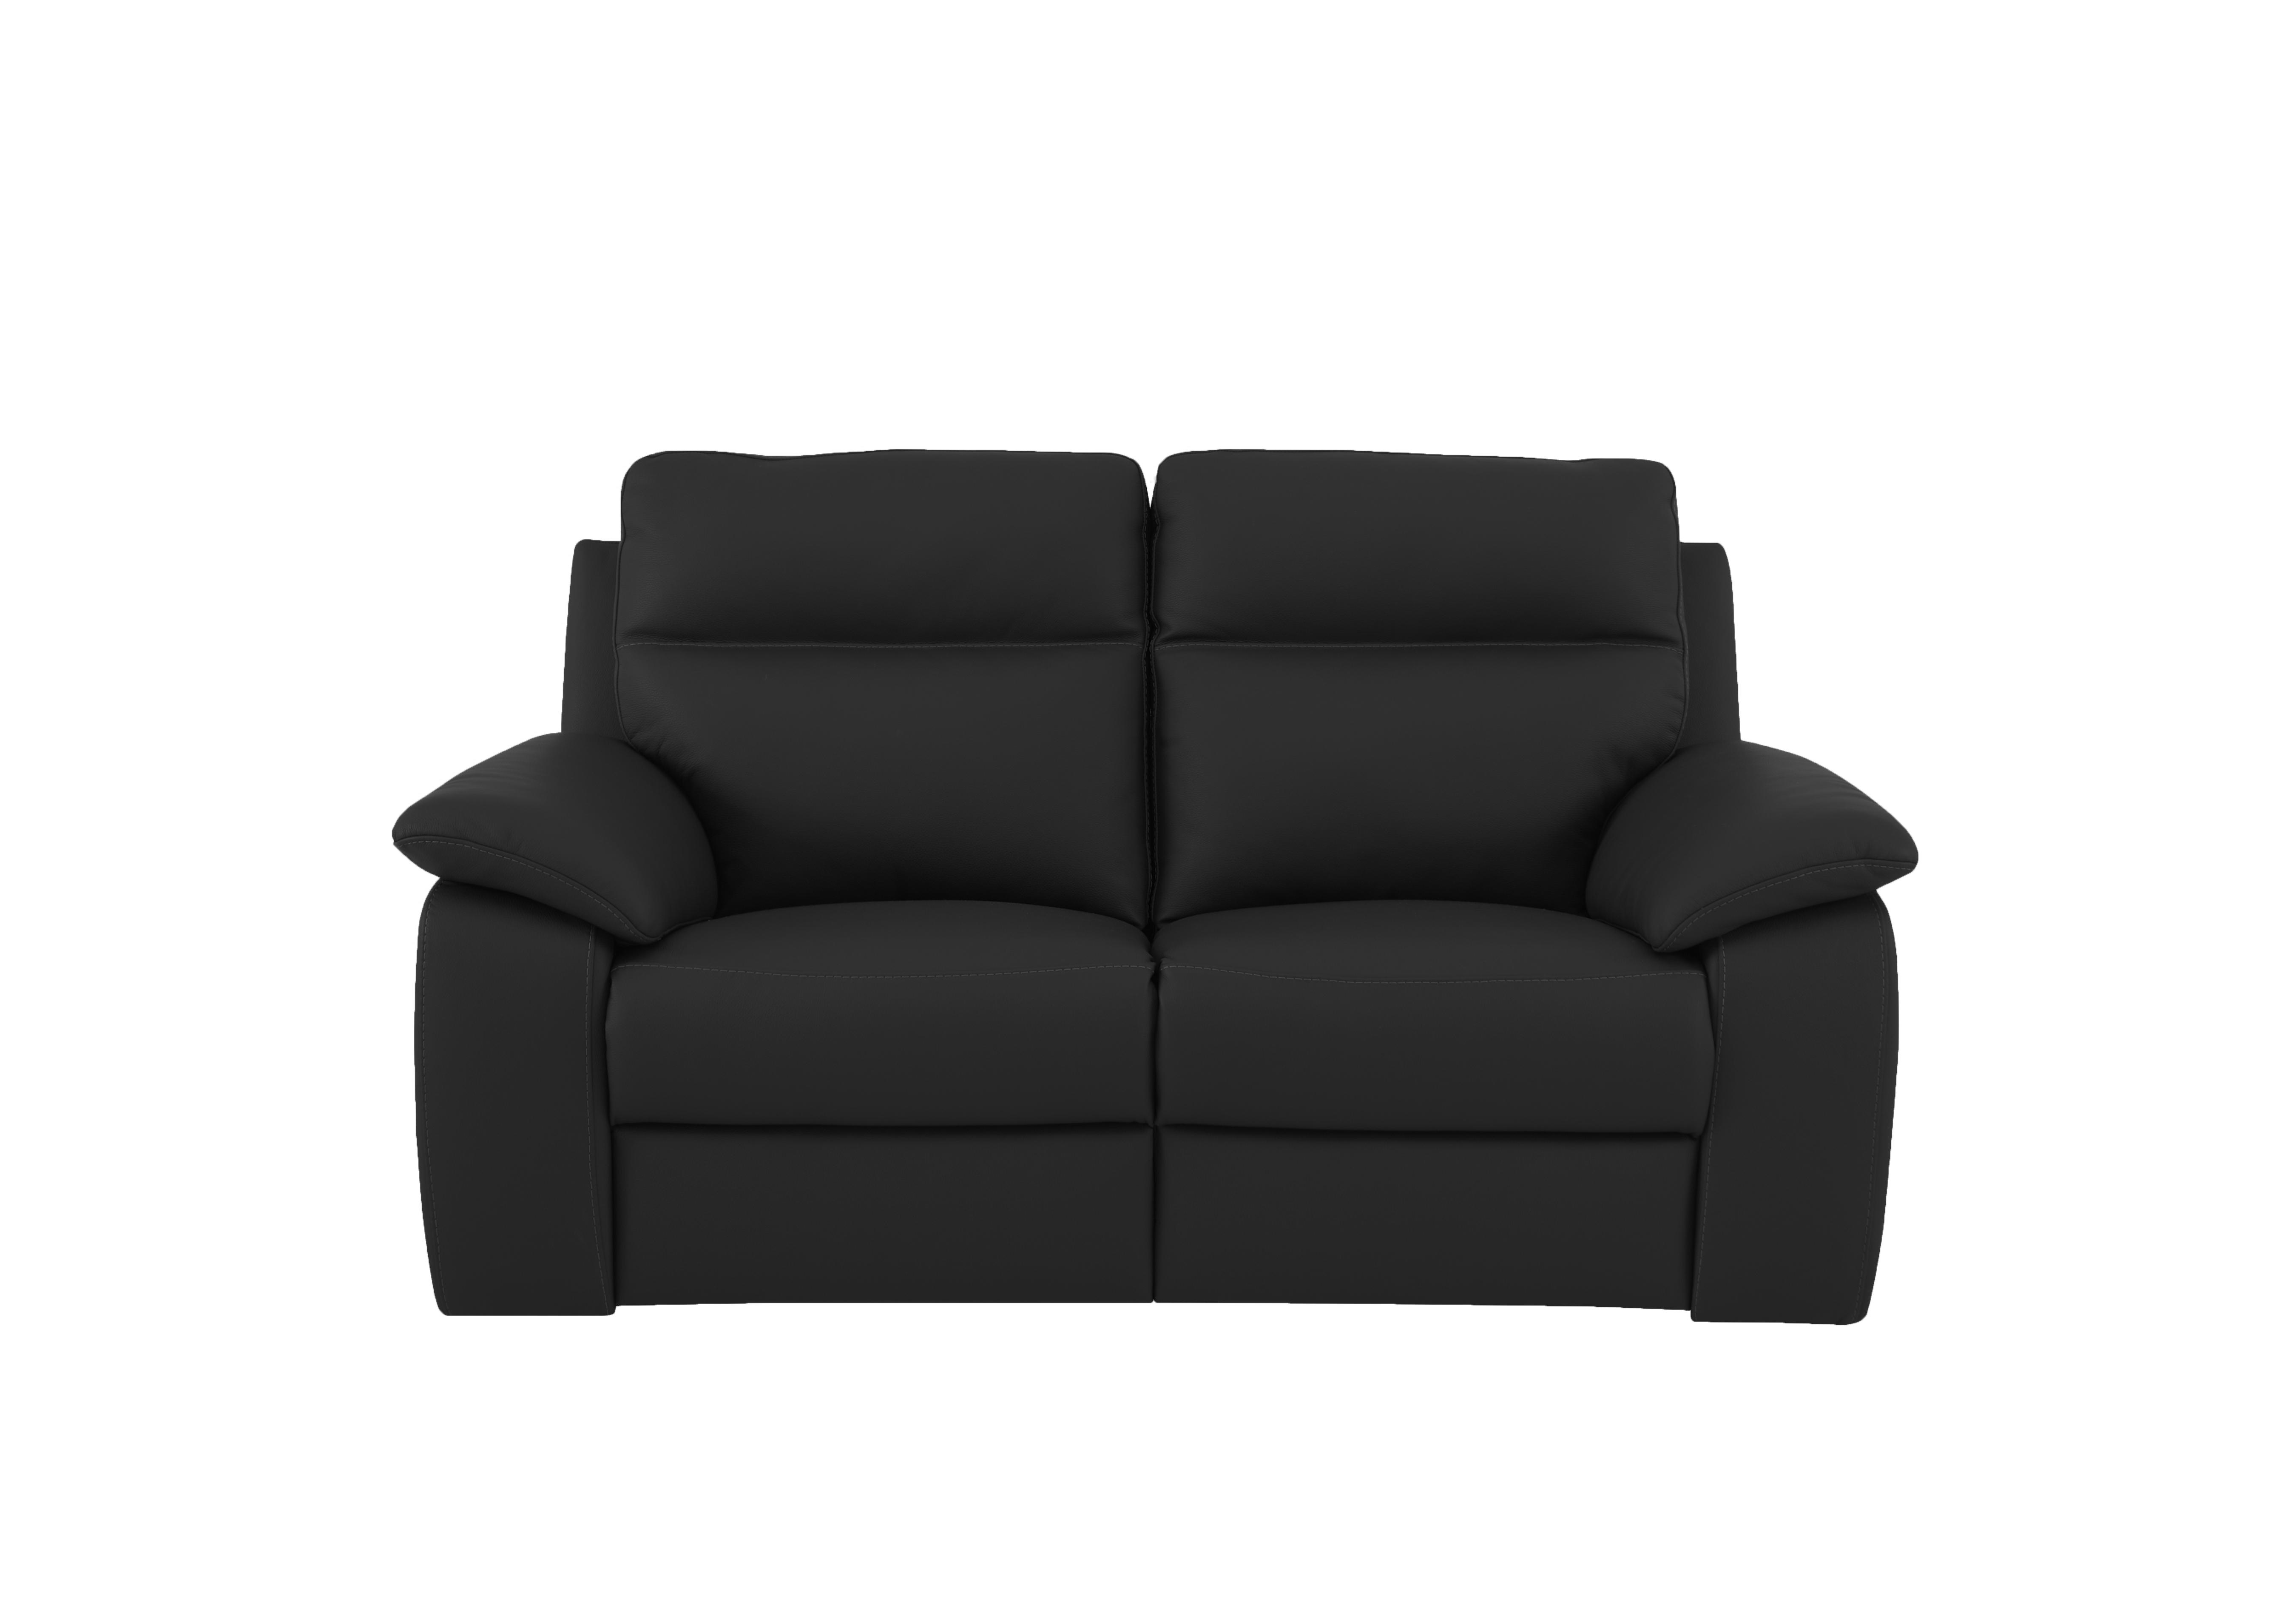 Pepino 2 Seater Leather Sofa in 71 Torello Nero on Furniture Village